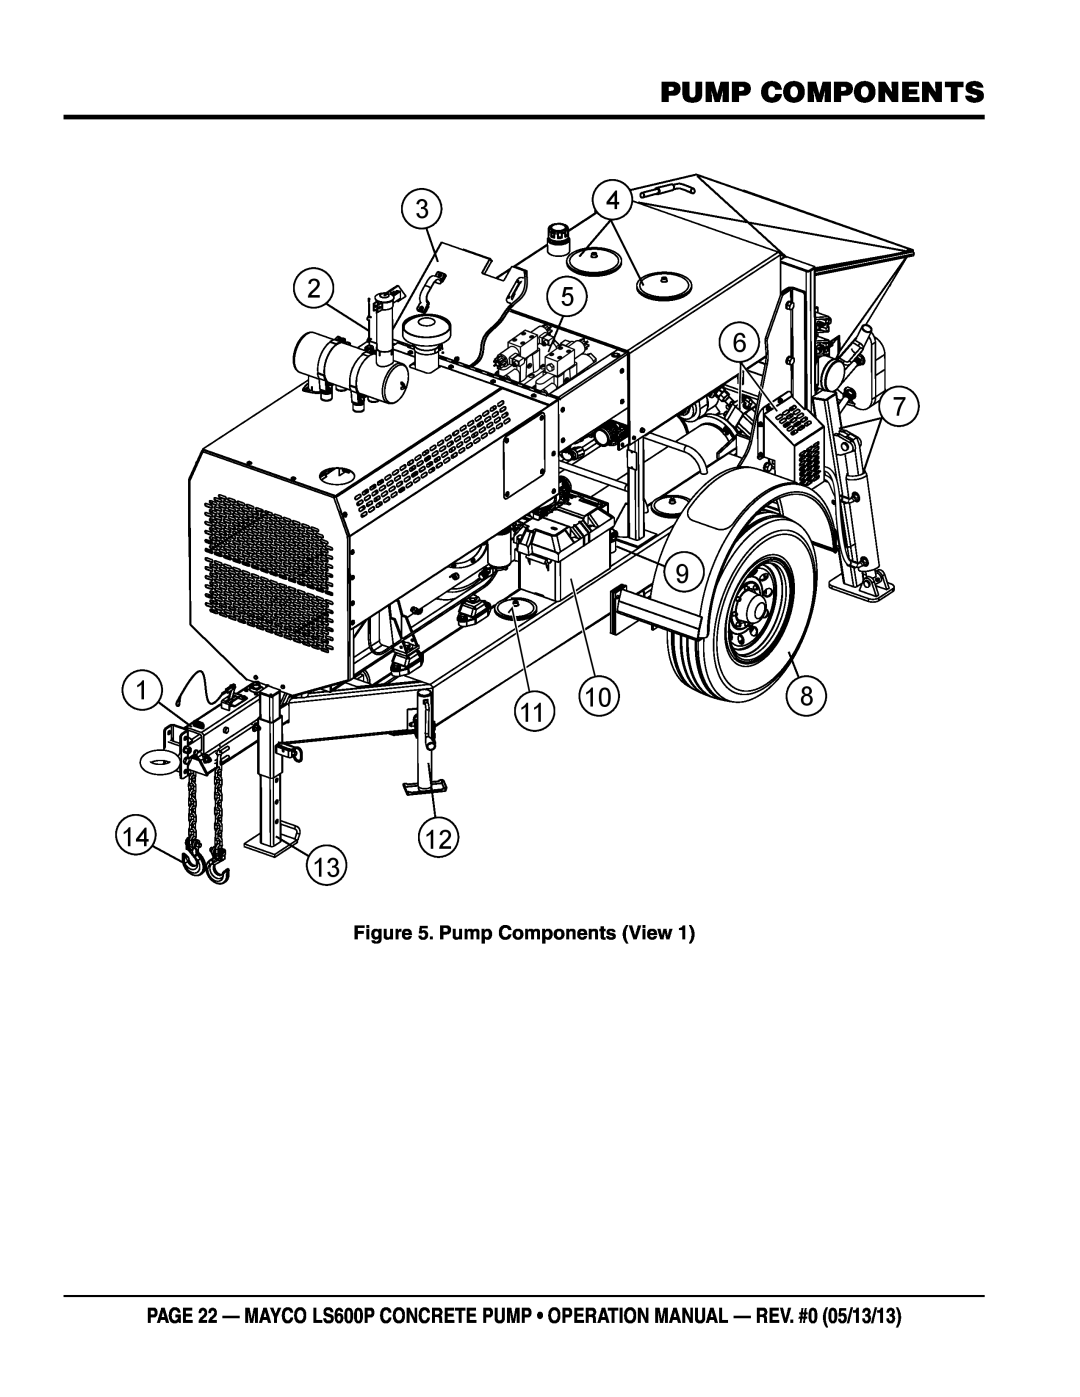 Multiquip LS600P operation manual pump components, Pump Components View 